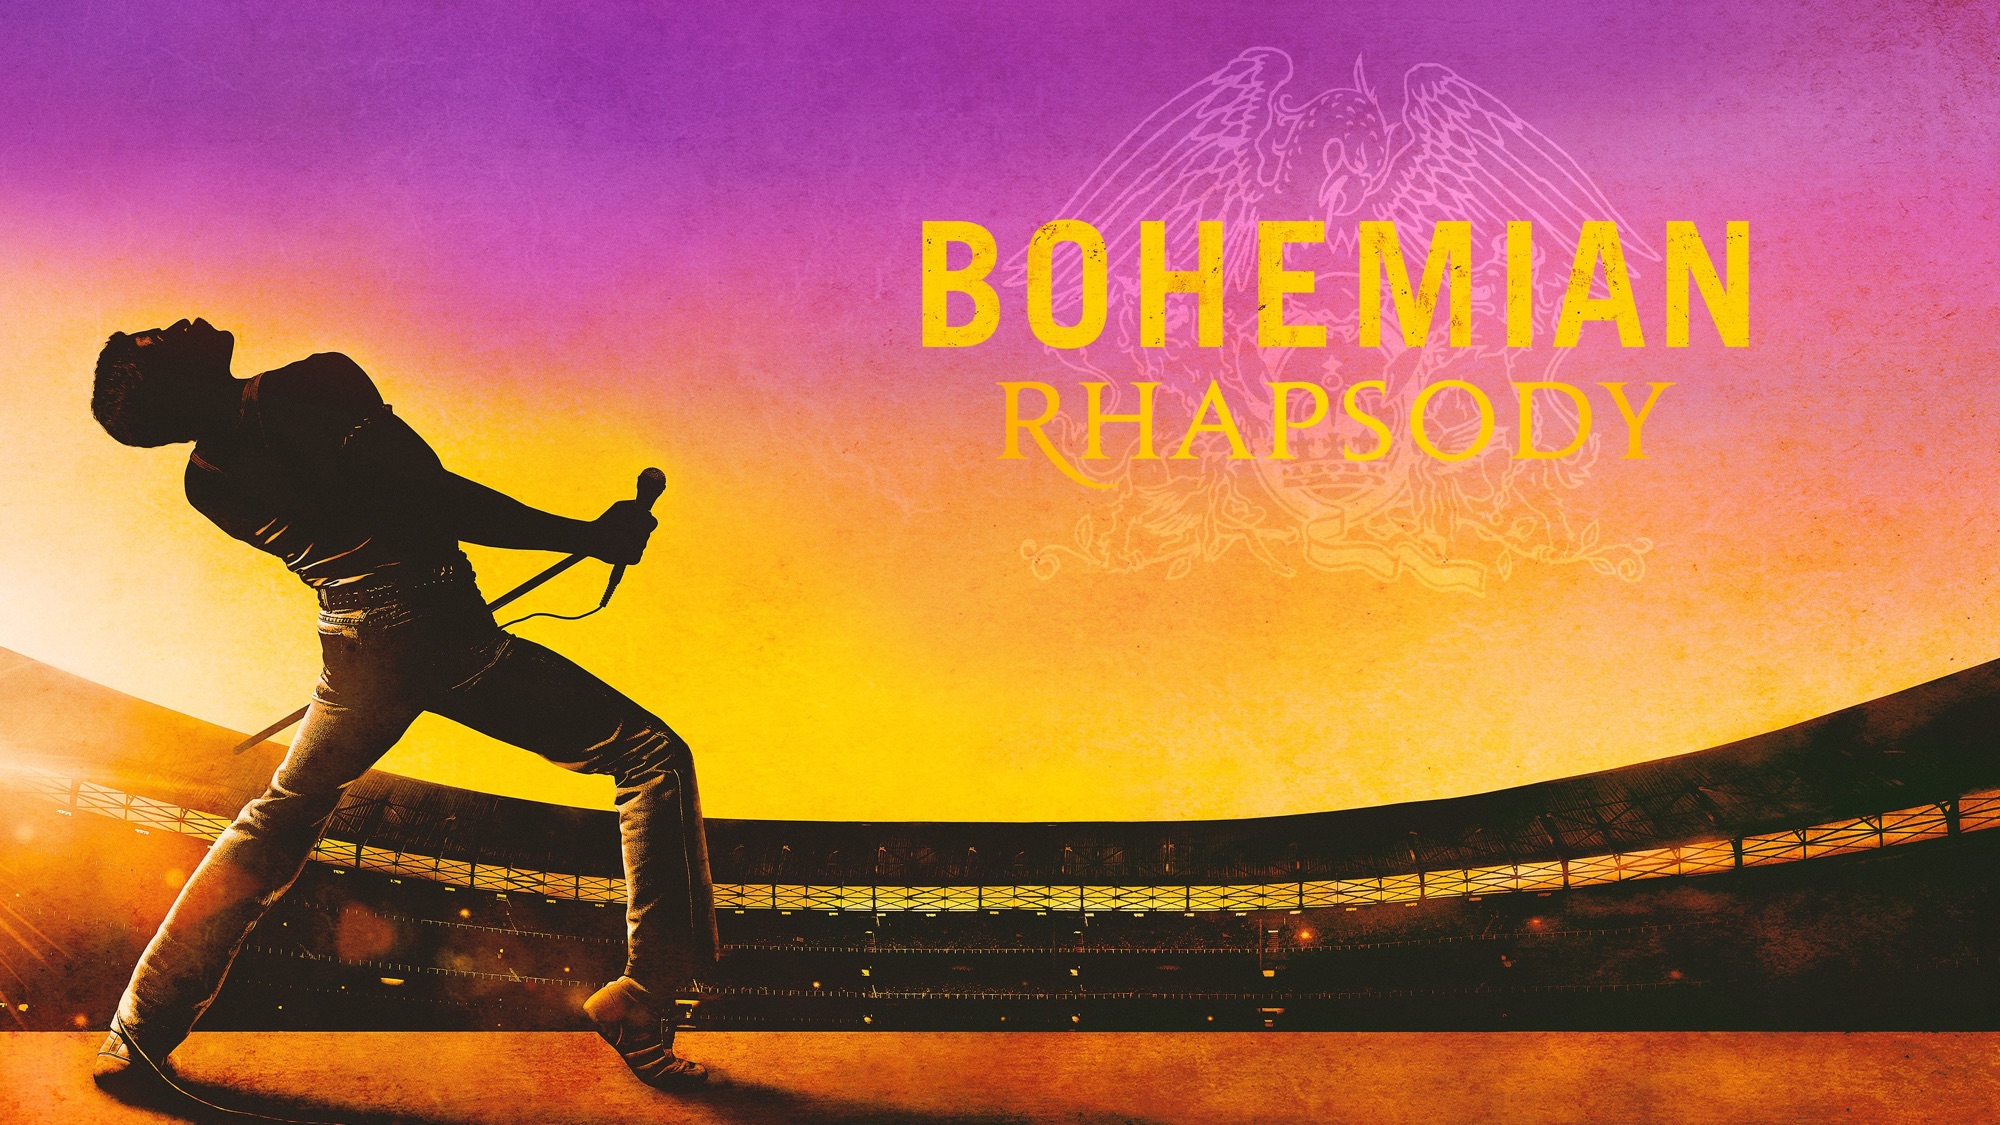 Movie Bohemian Rhapsody 2000x1125